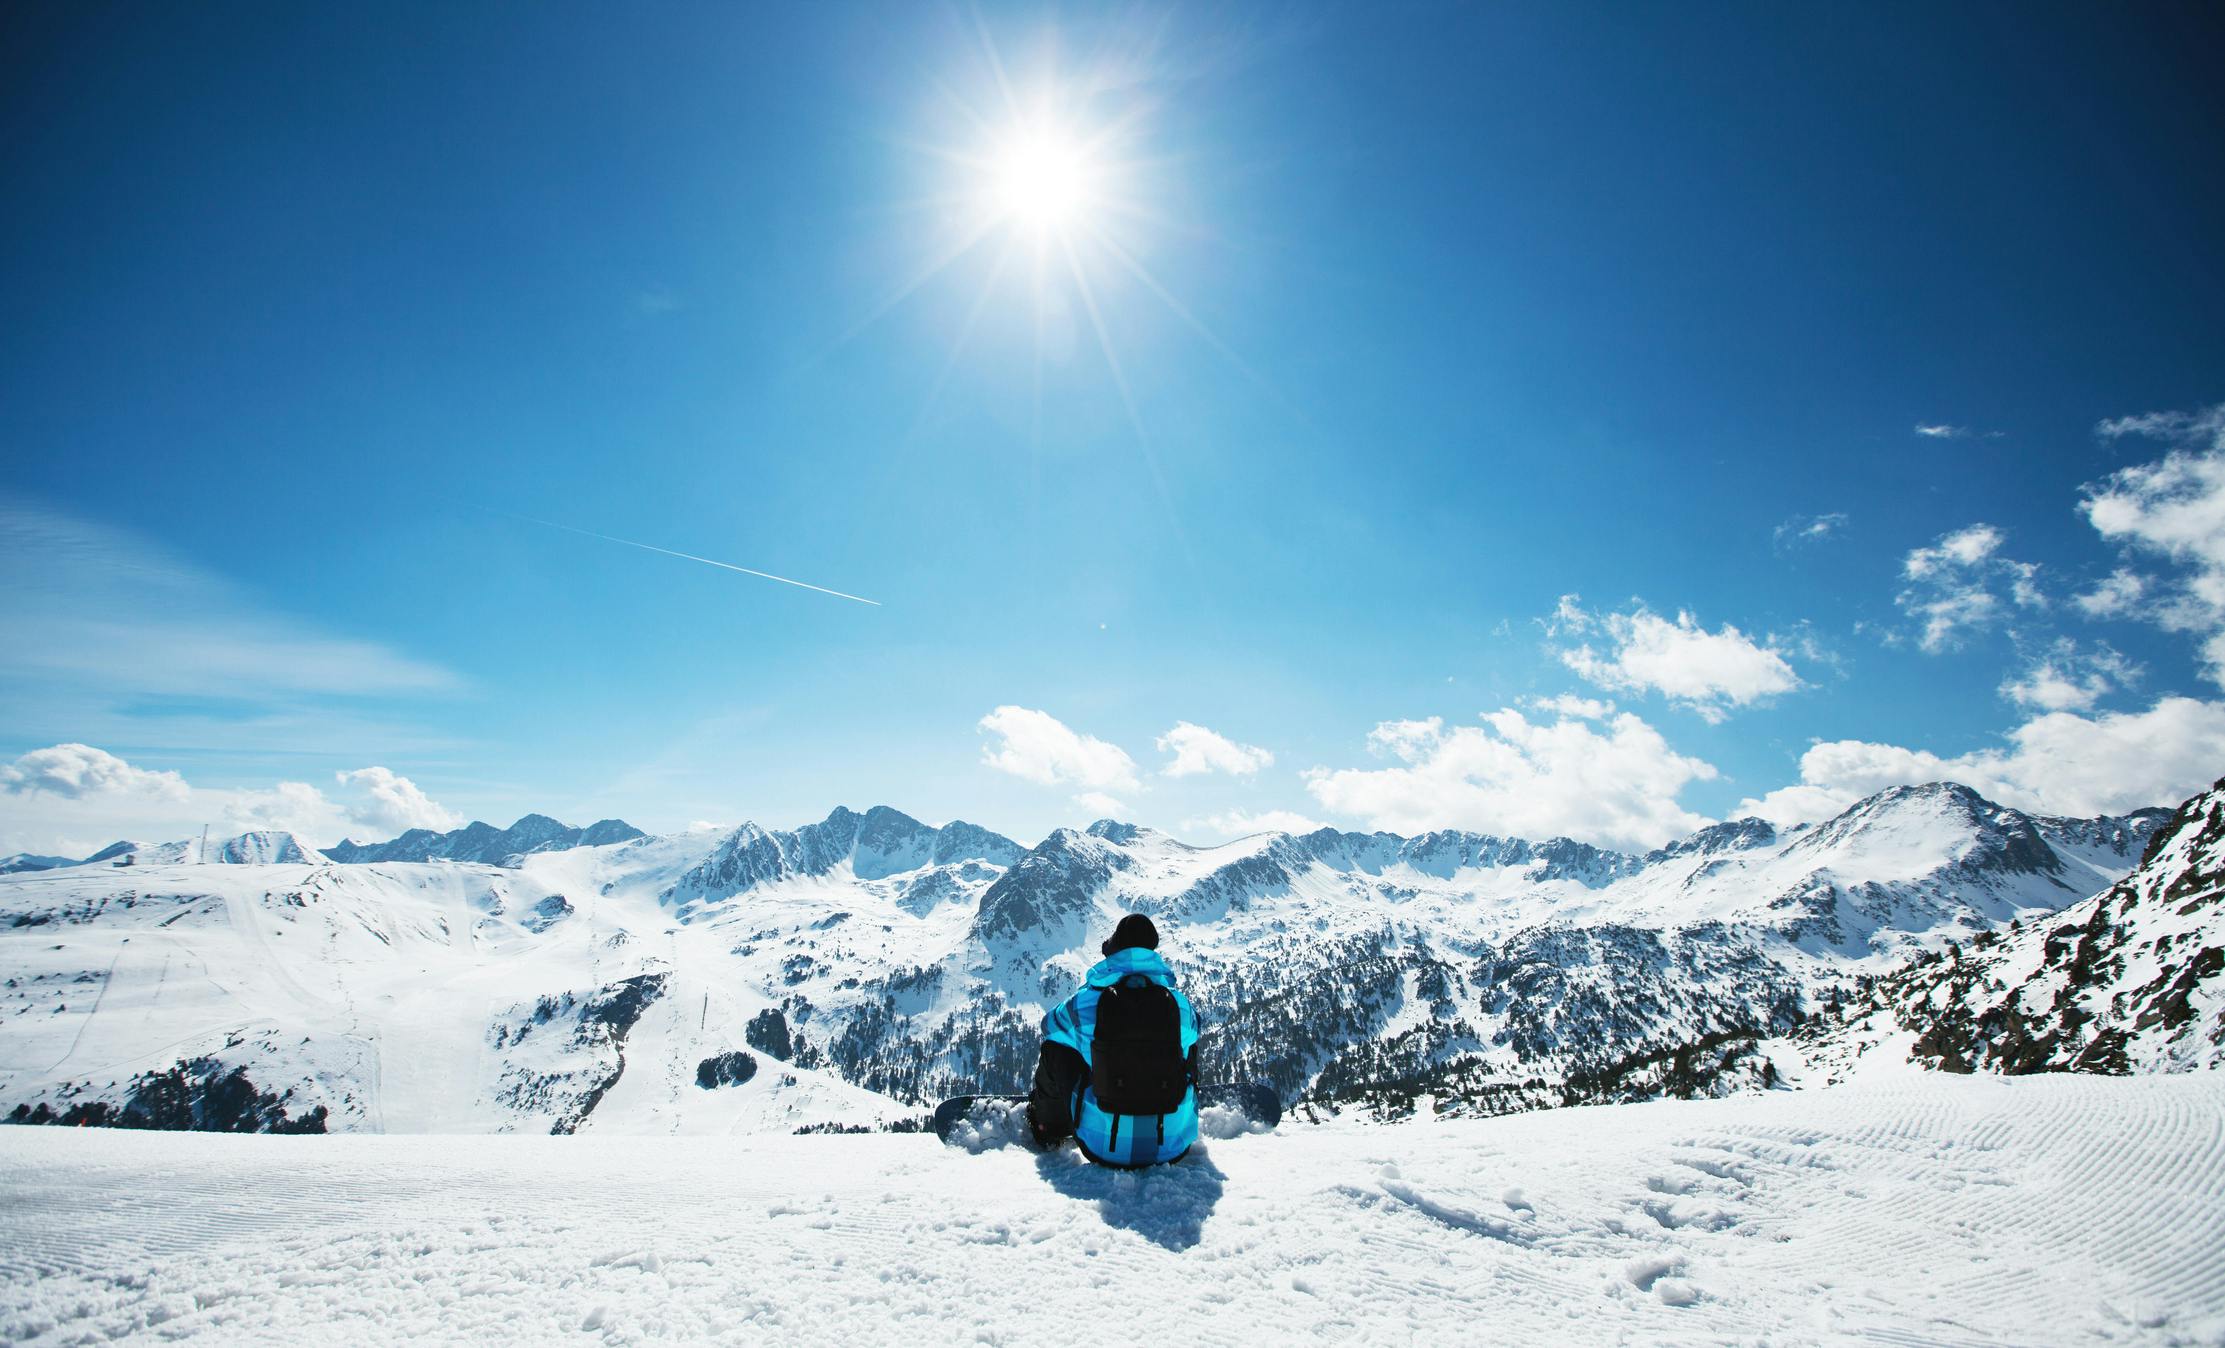 Grand Valirassa lumilautailija katselee vuoristomaisemaa Andorrassa.